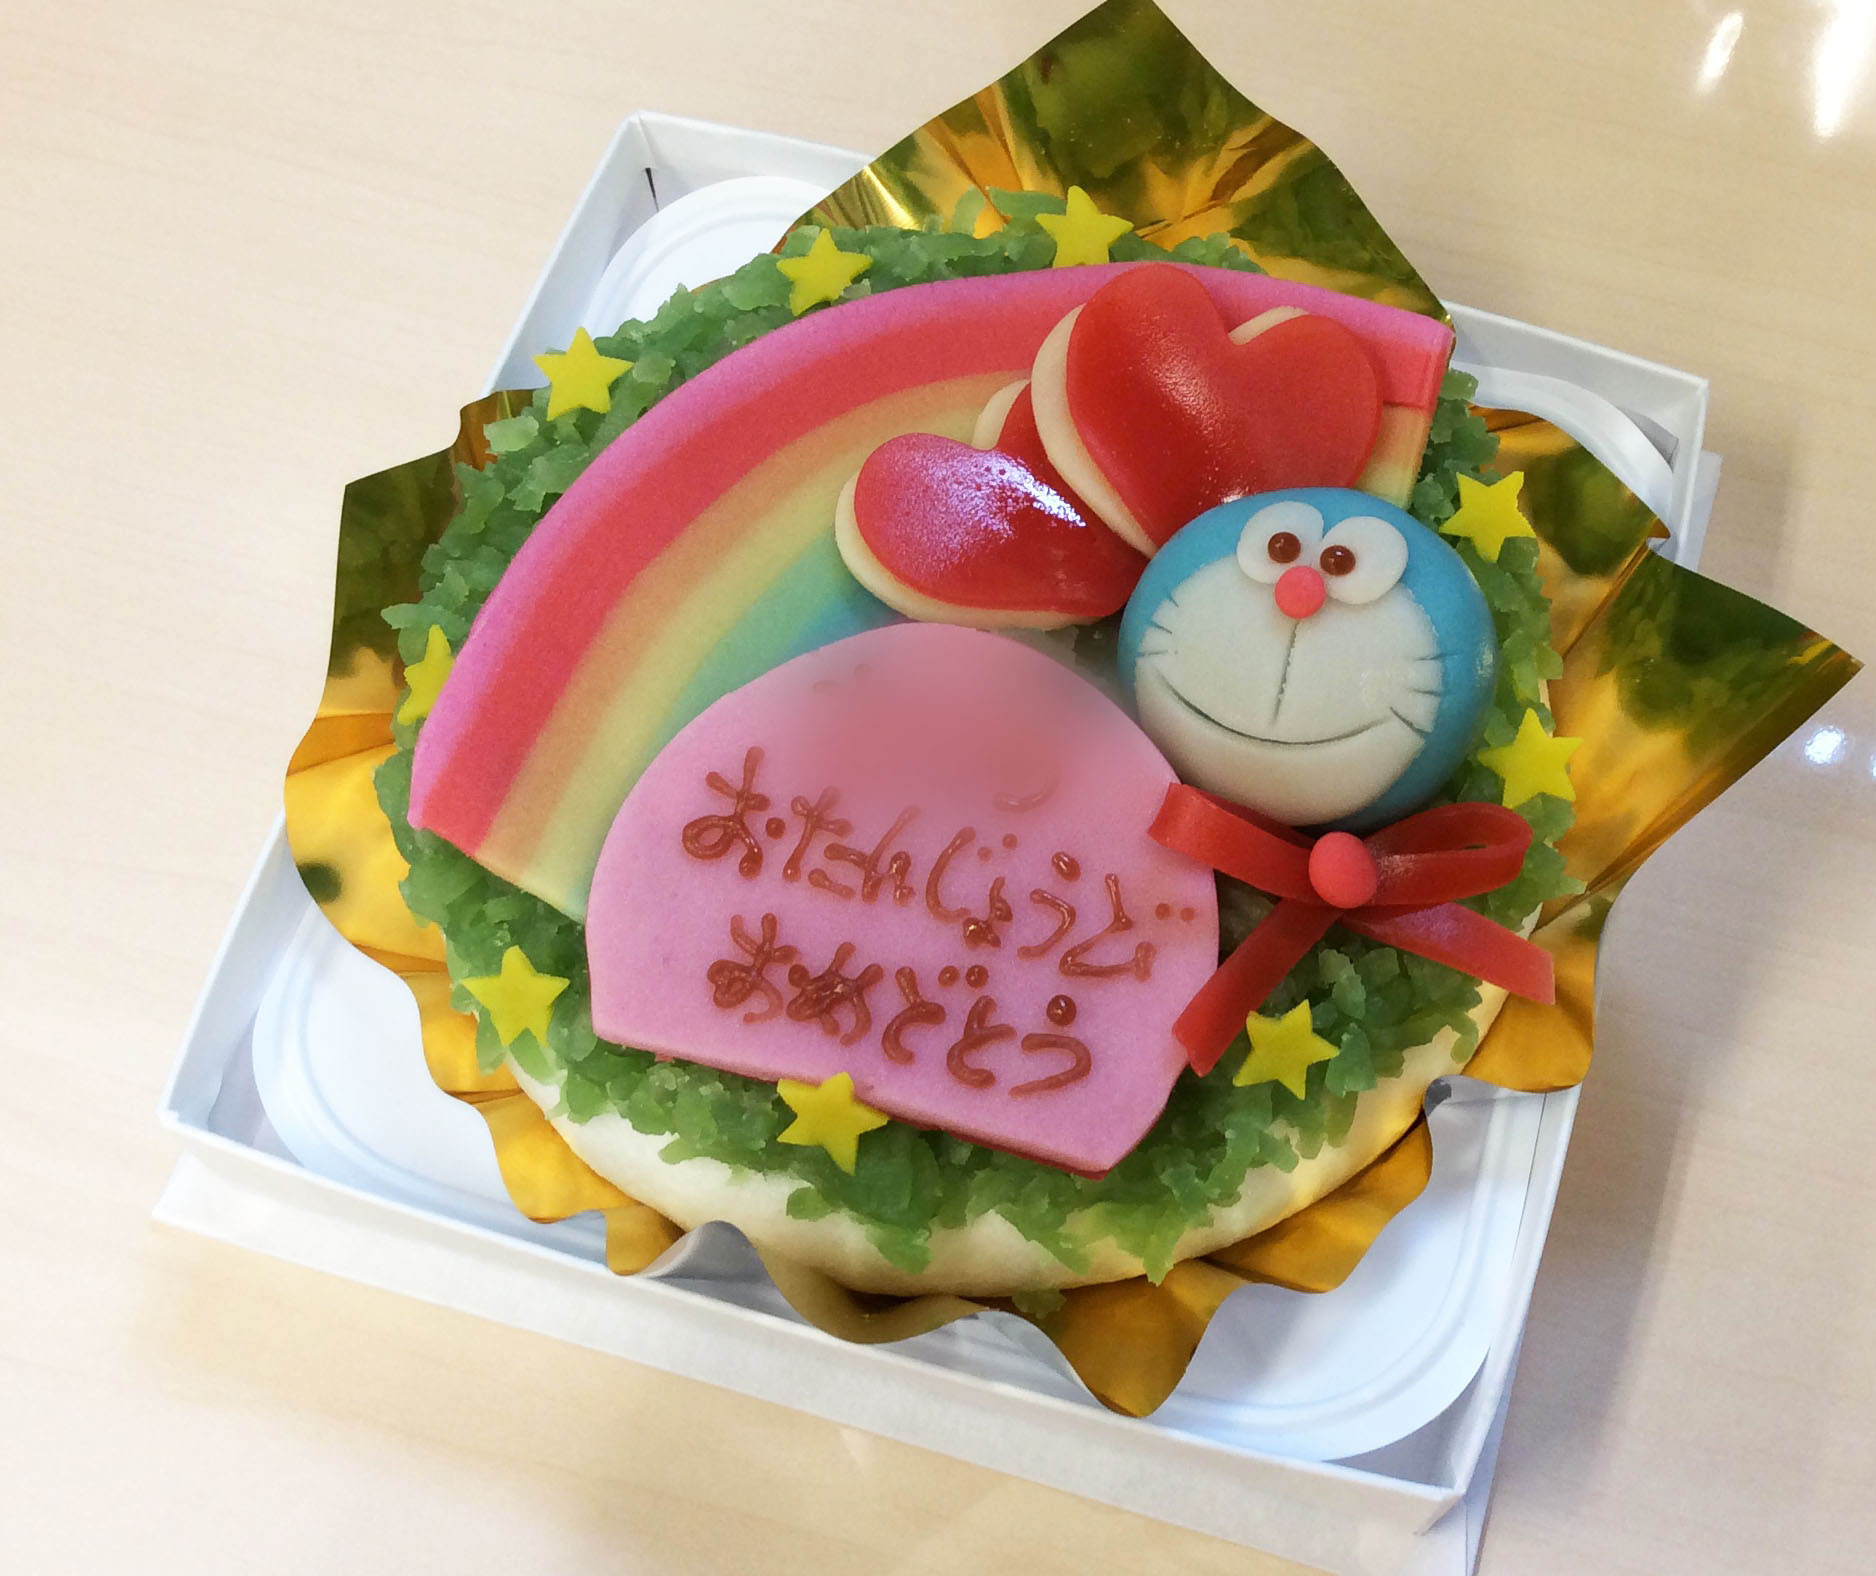 菓子処 喜久春 お誕生日に和菓子ケーキをご注文いただきました